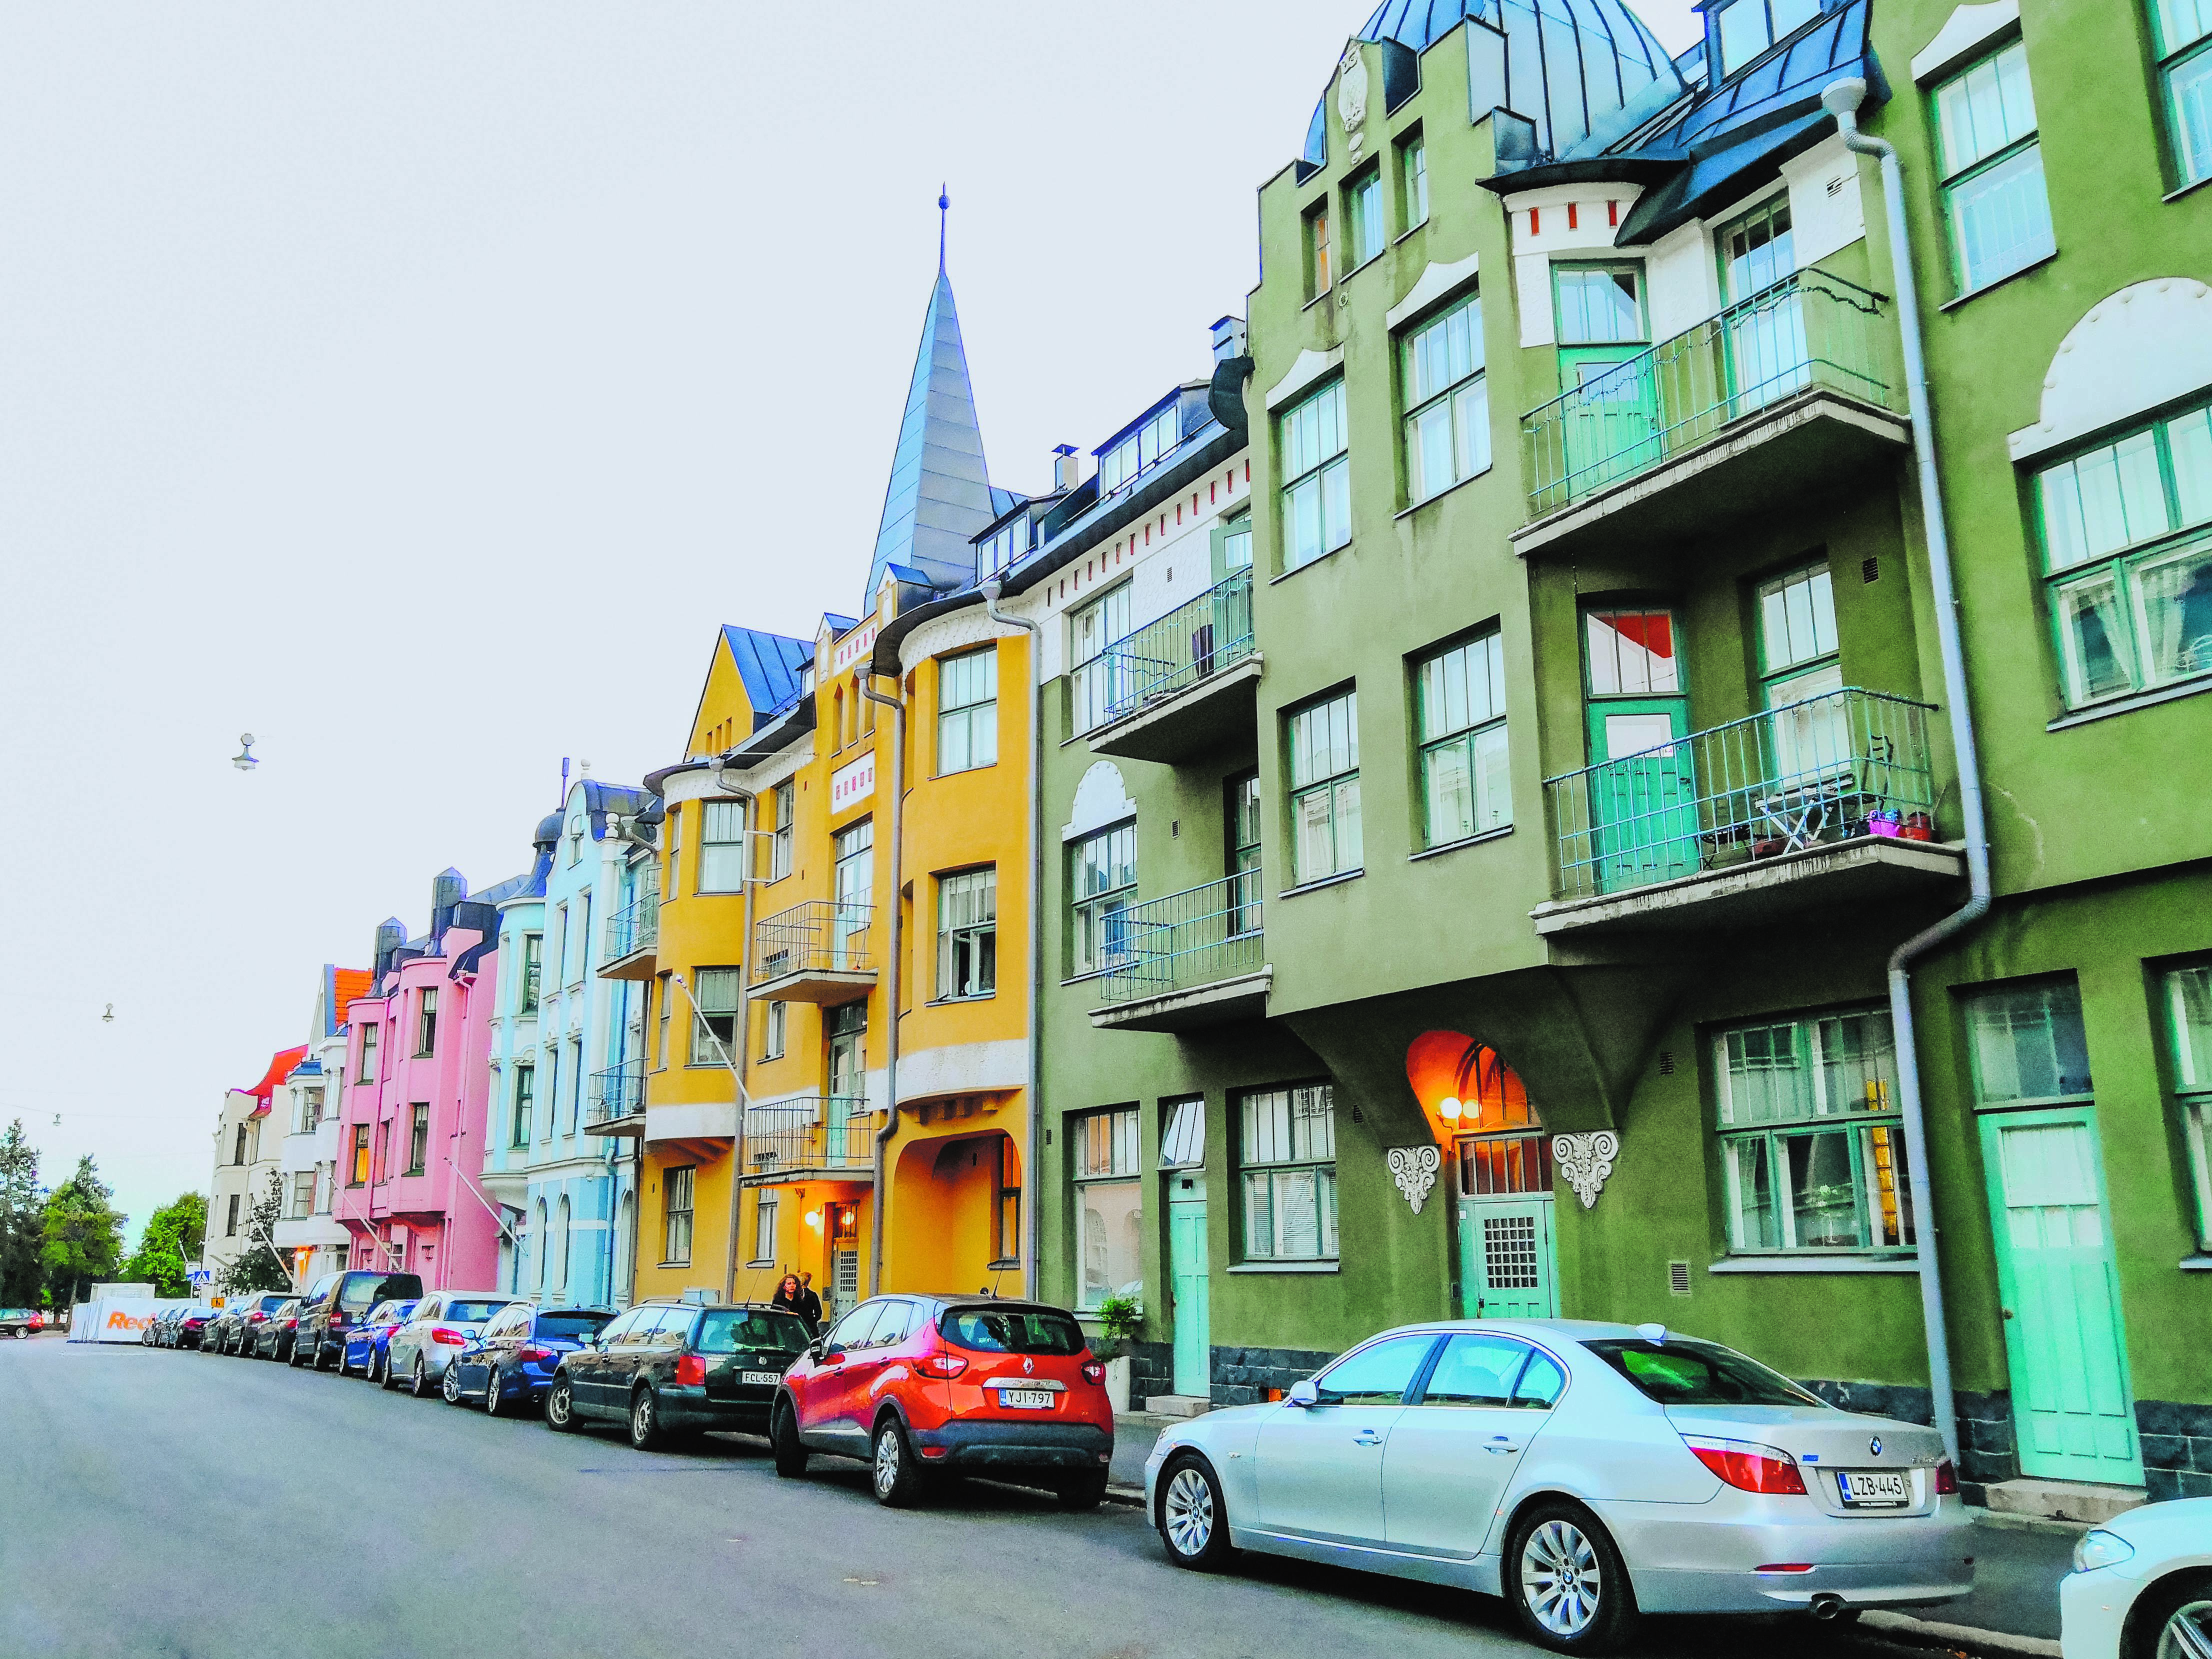 Farbenfrohe Häuserreihe in der Innenstadt von Helsinki